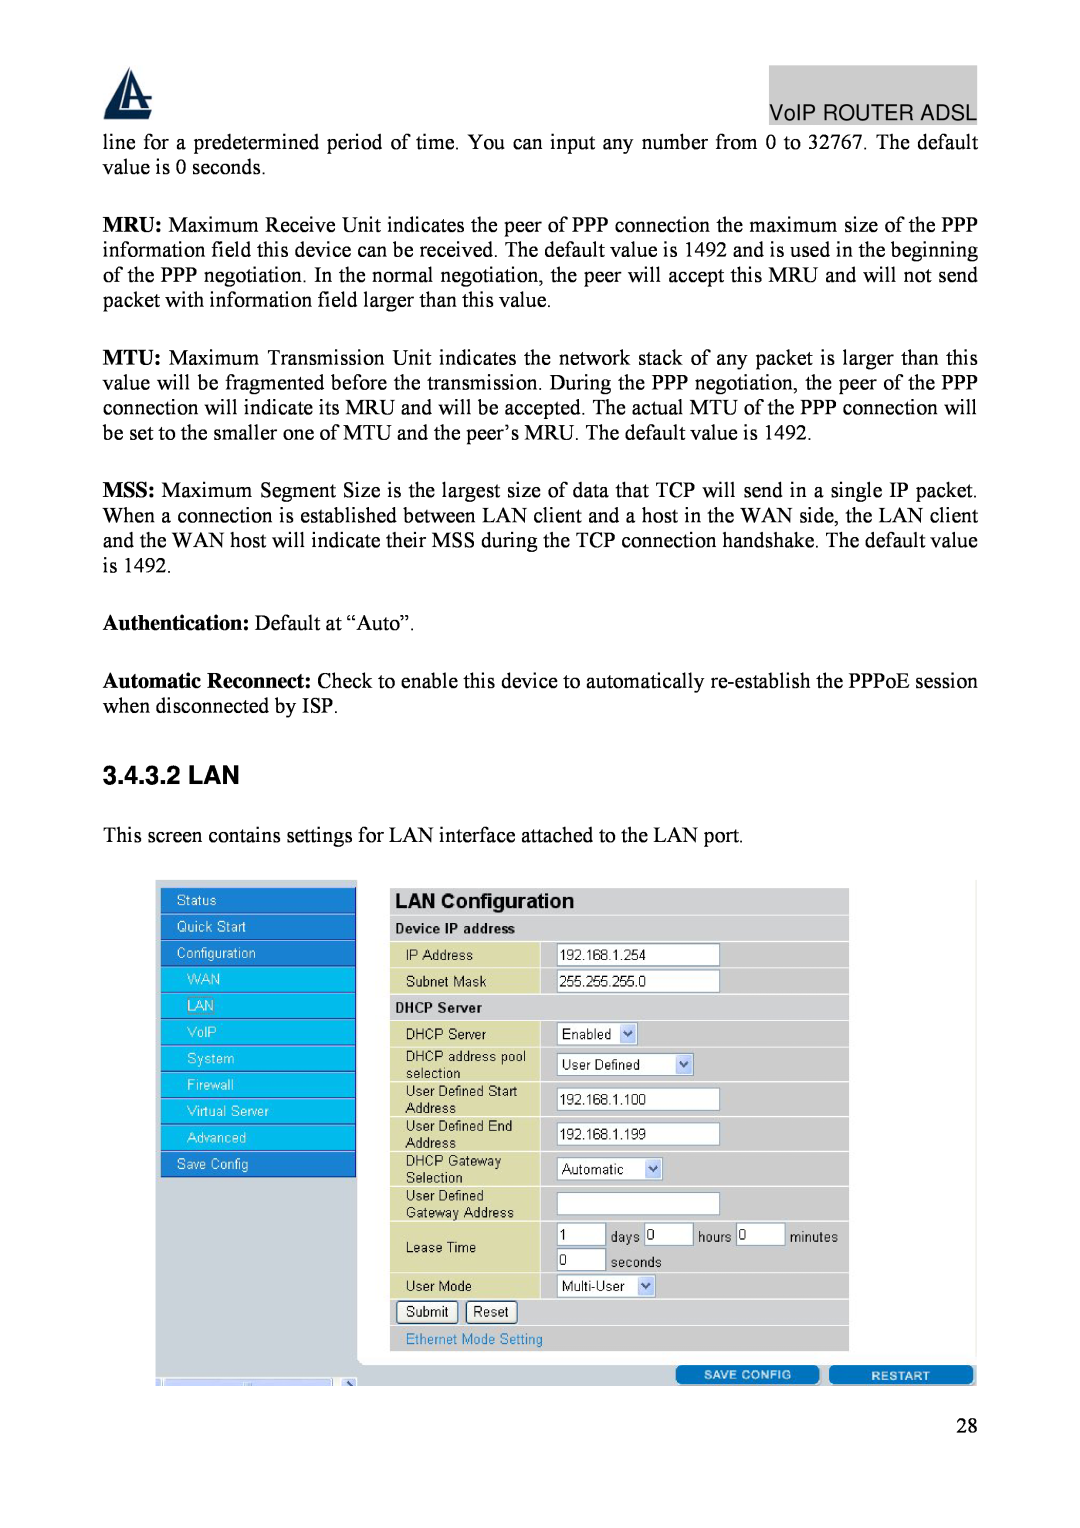 Atlantis Land A02-RAV211 manual 3.4.3.2 LAN 